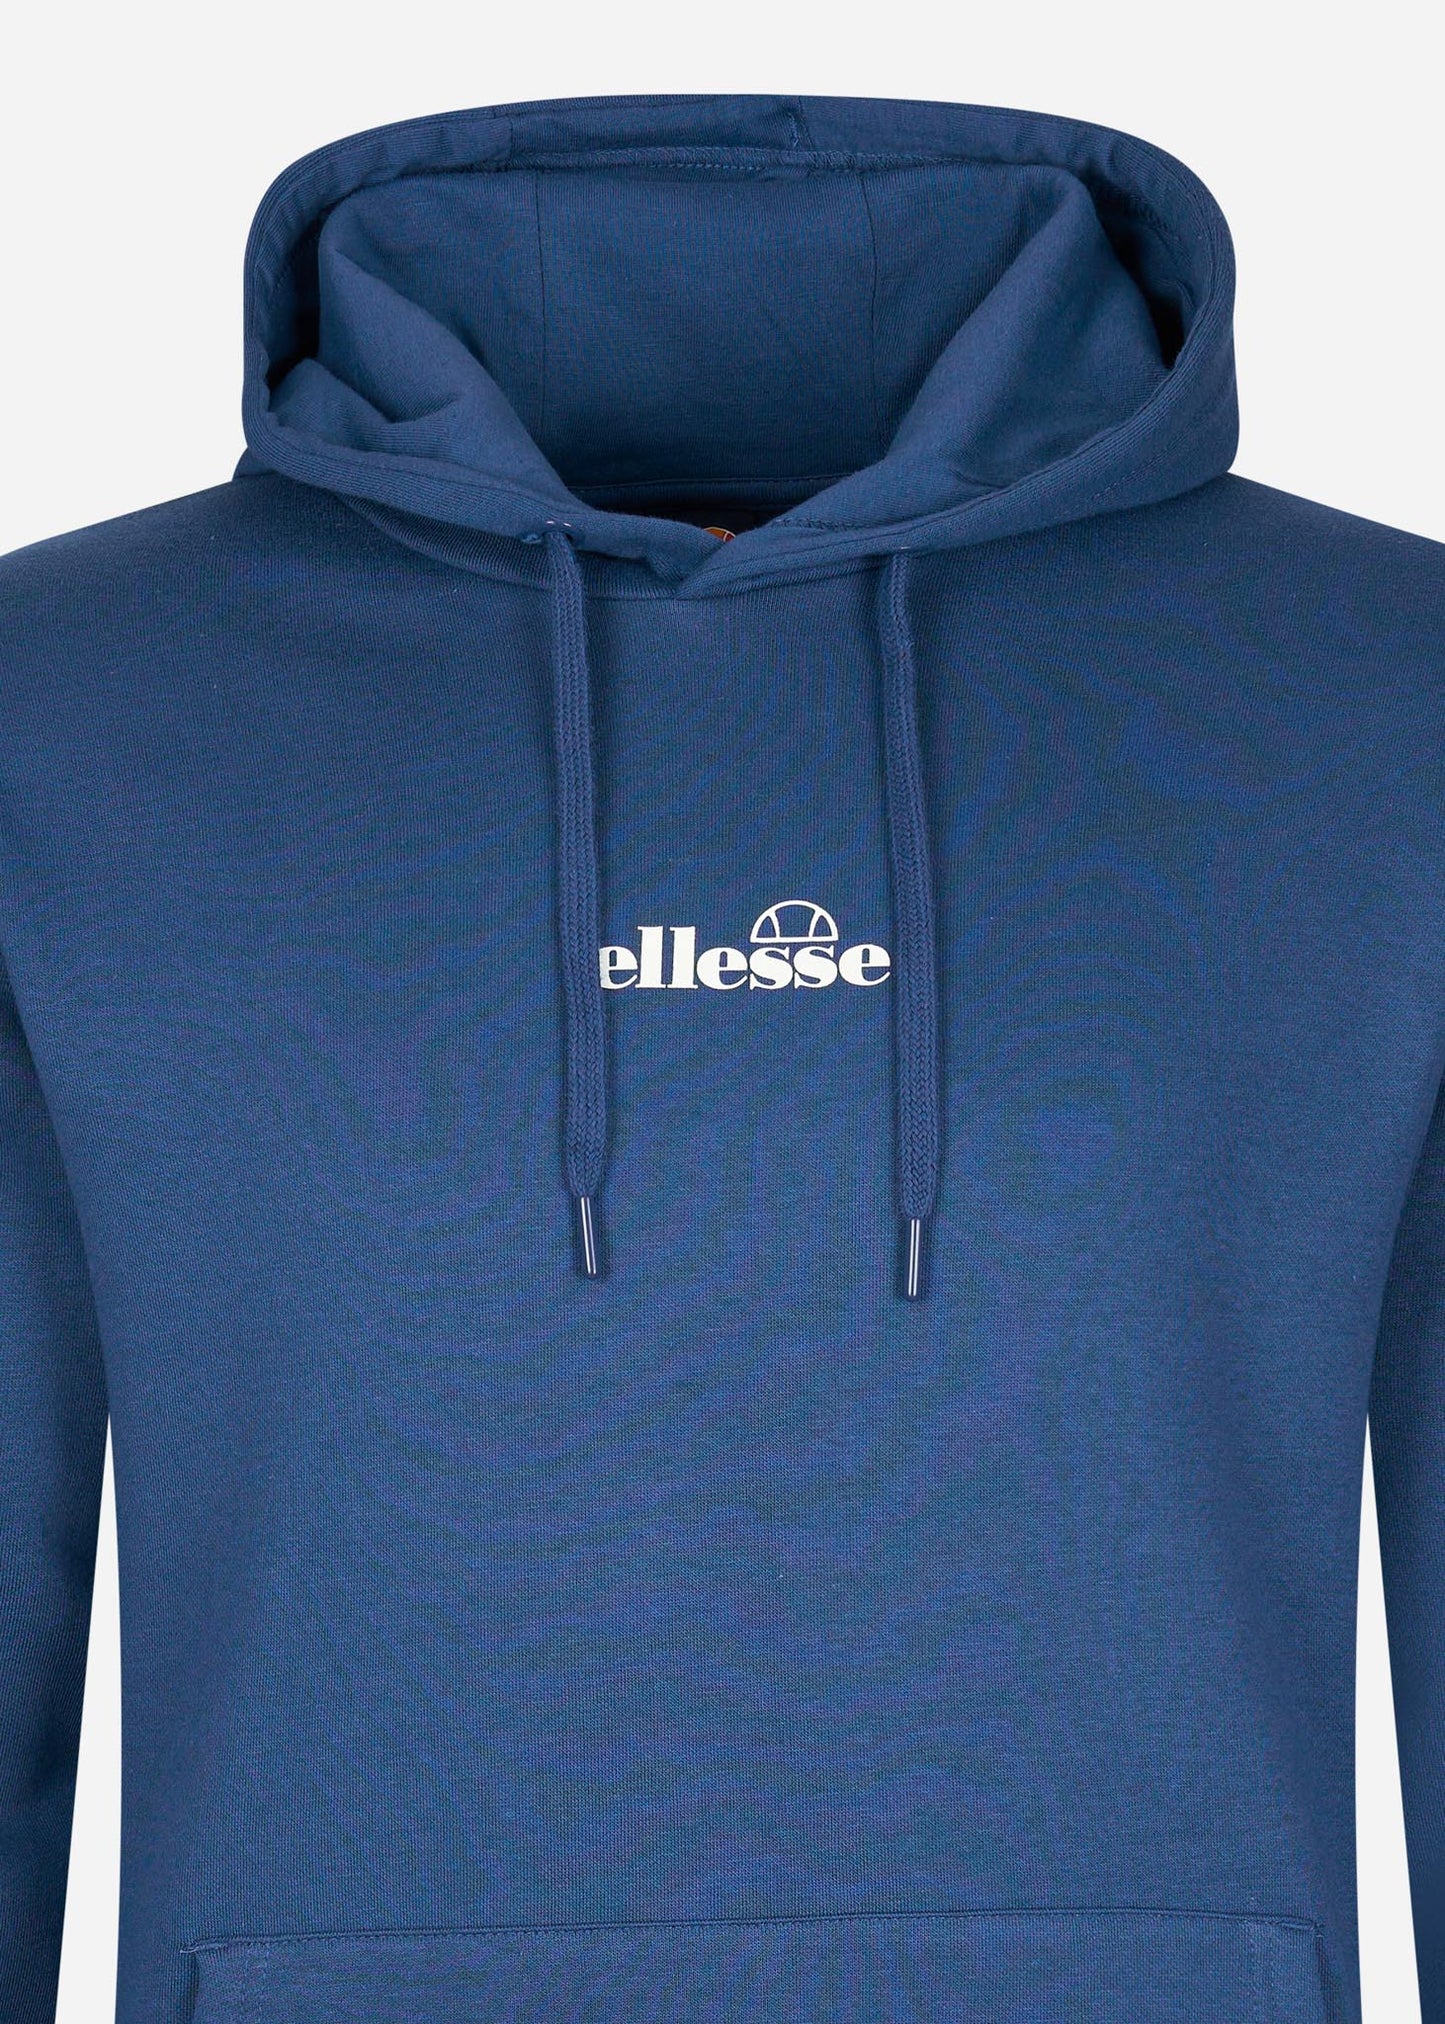 ellesse hoodie blauw met logo op borst 